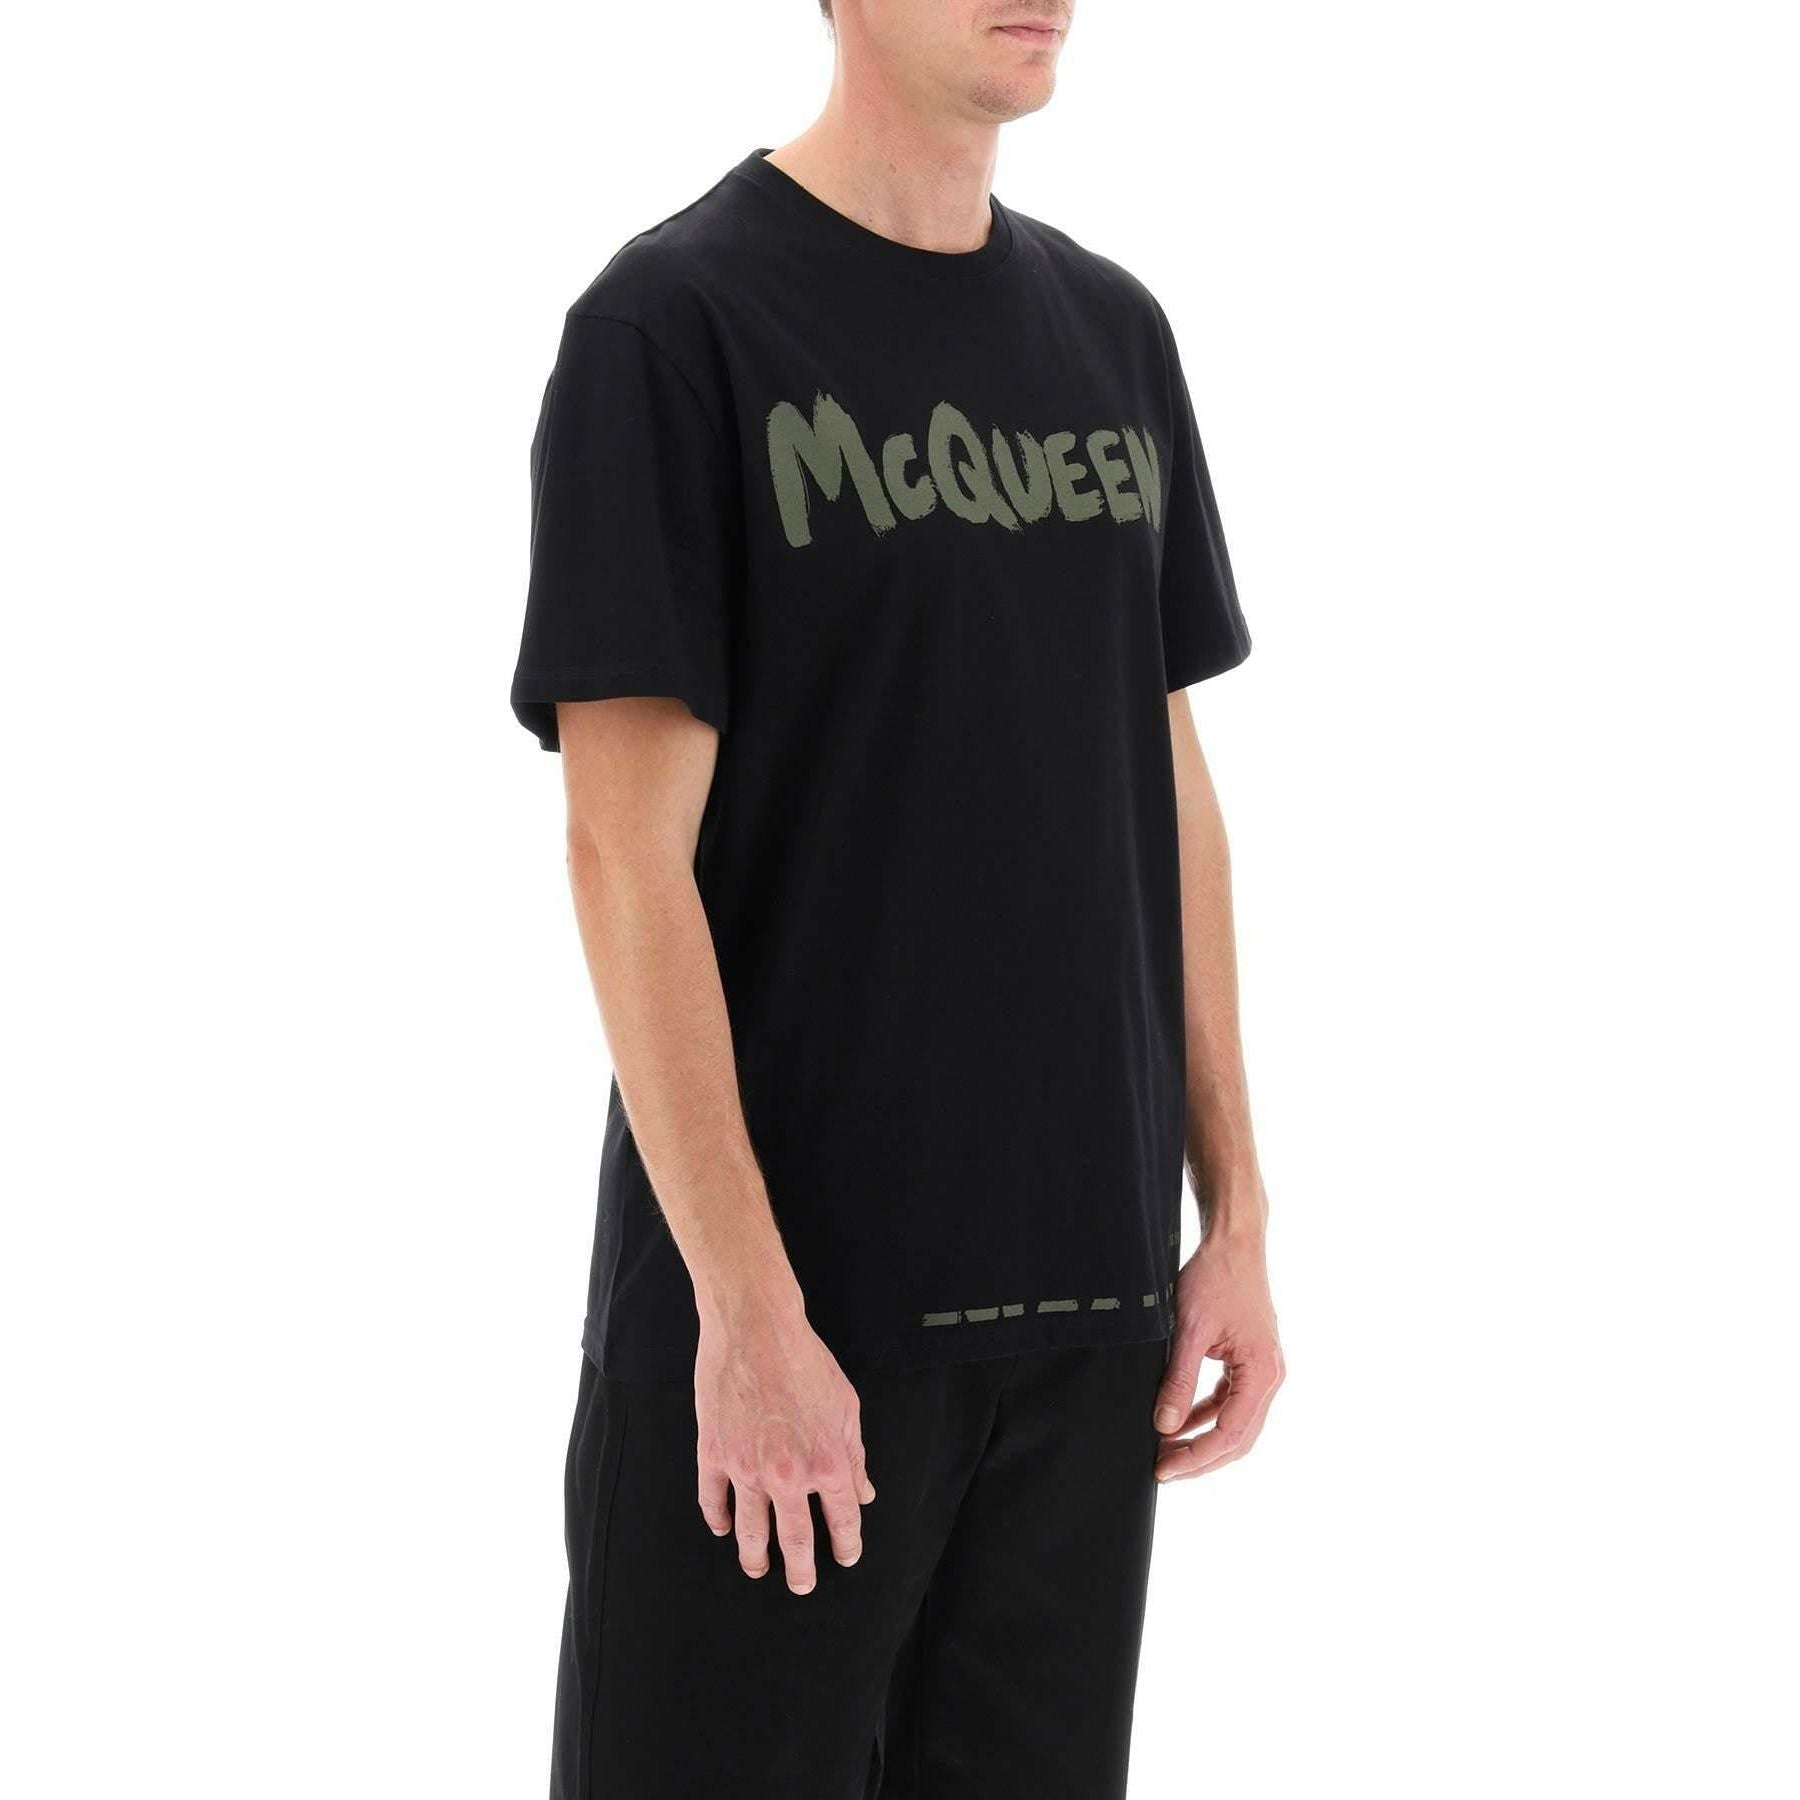 McQueen Graffiti T-Shirt ALEXANDER MCQUEEN JOHN JULIA.